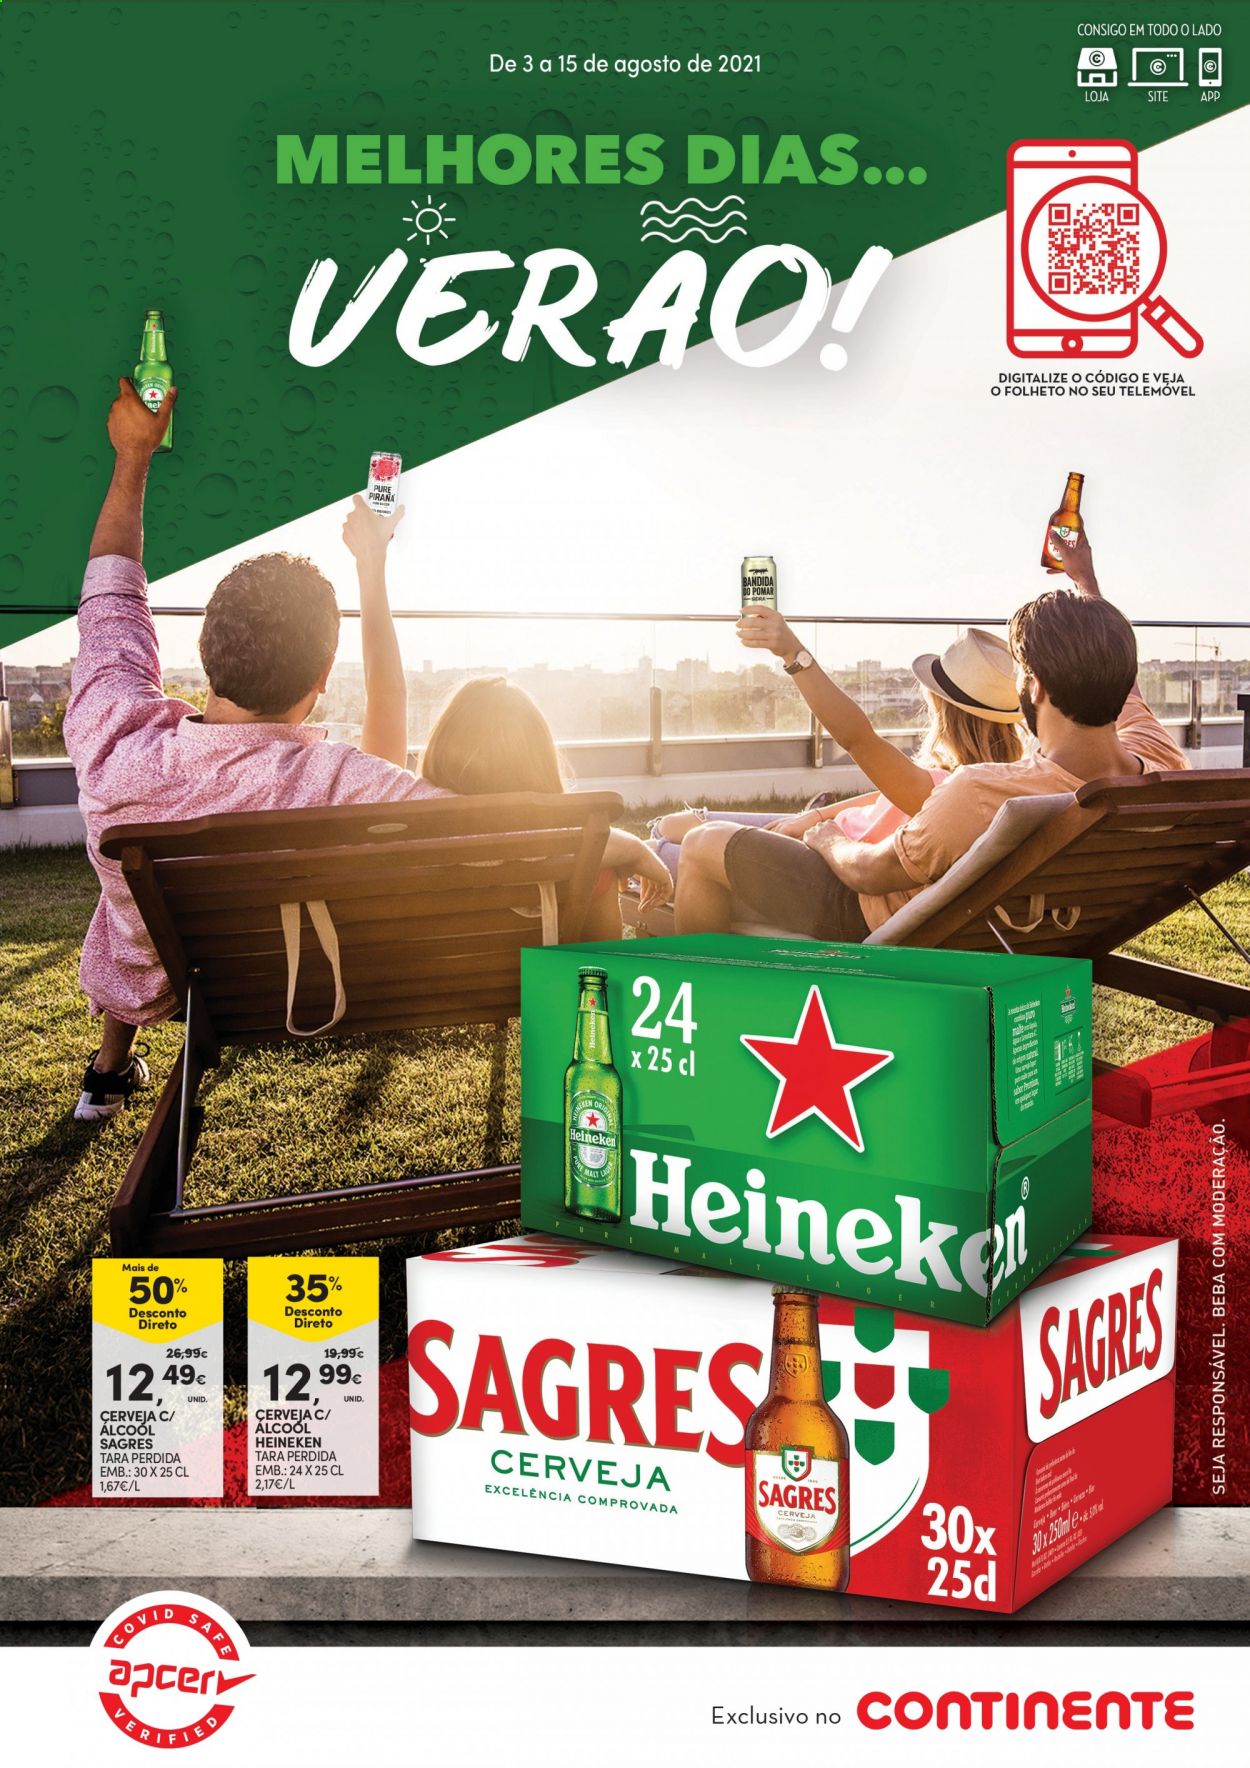 thumbnail - Folheto Continente - 3.8.2021 - 15.8.2021 - Produtos em promoção - Heineken, Sagres, cerveja. Página 1.